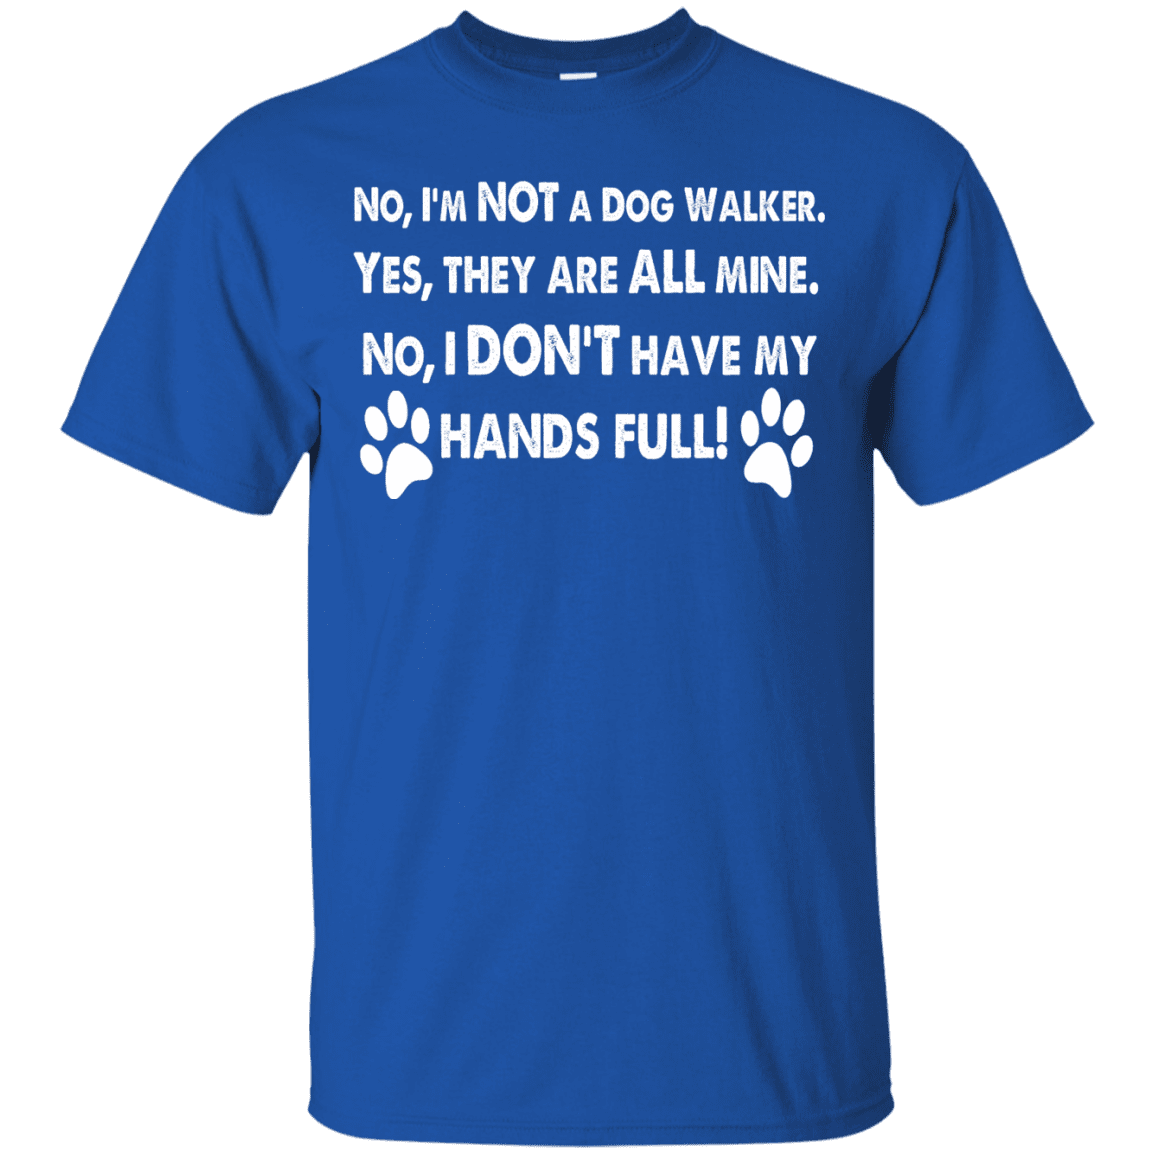 Not A Dog Walker - T Shirt.